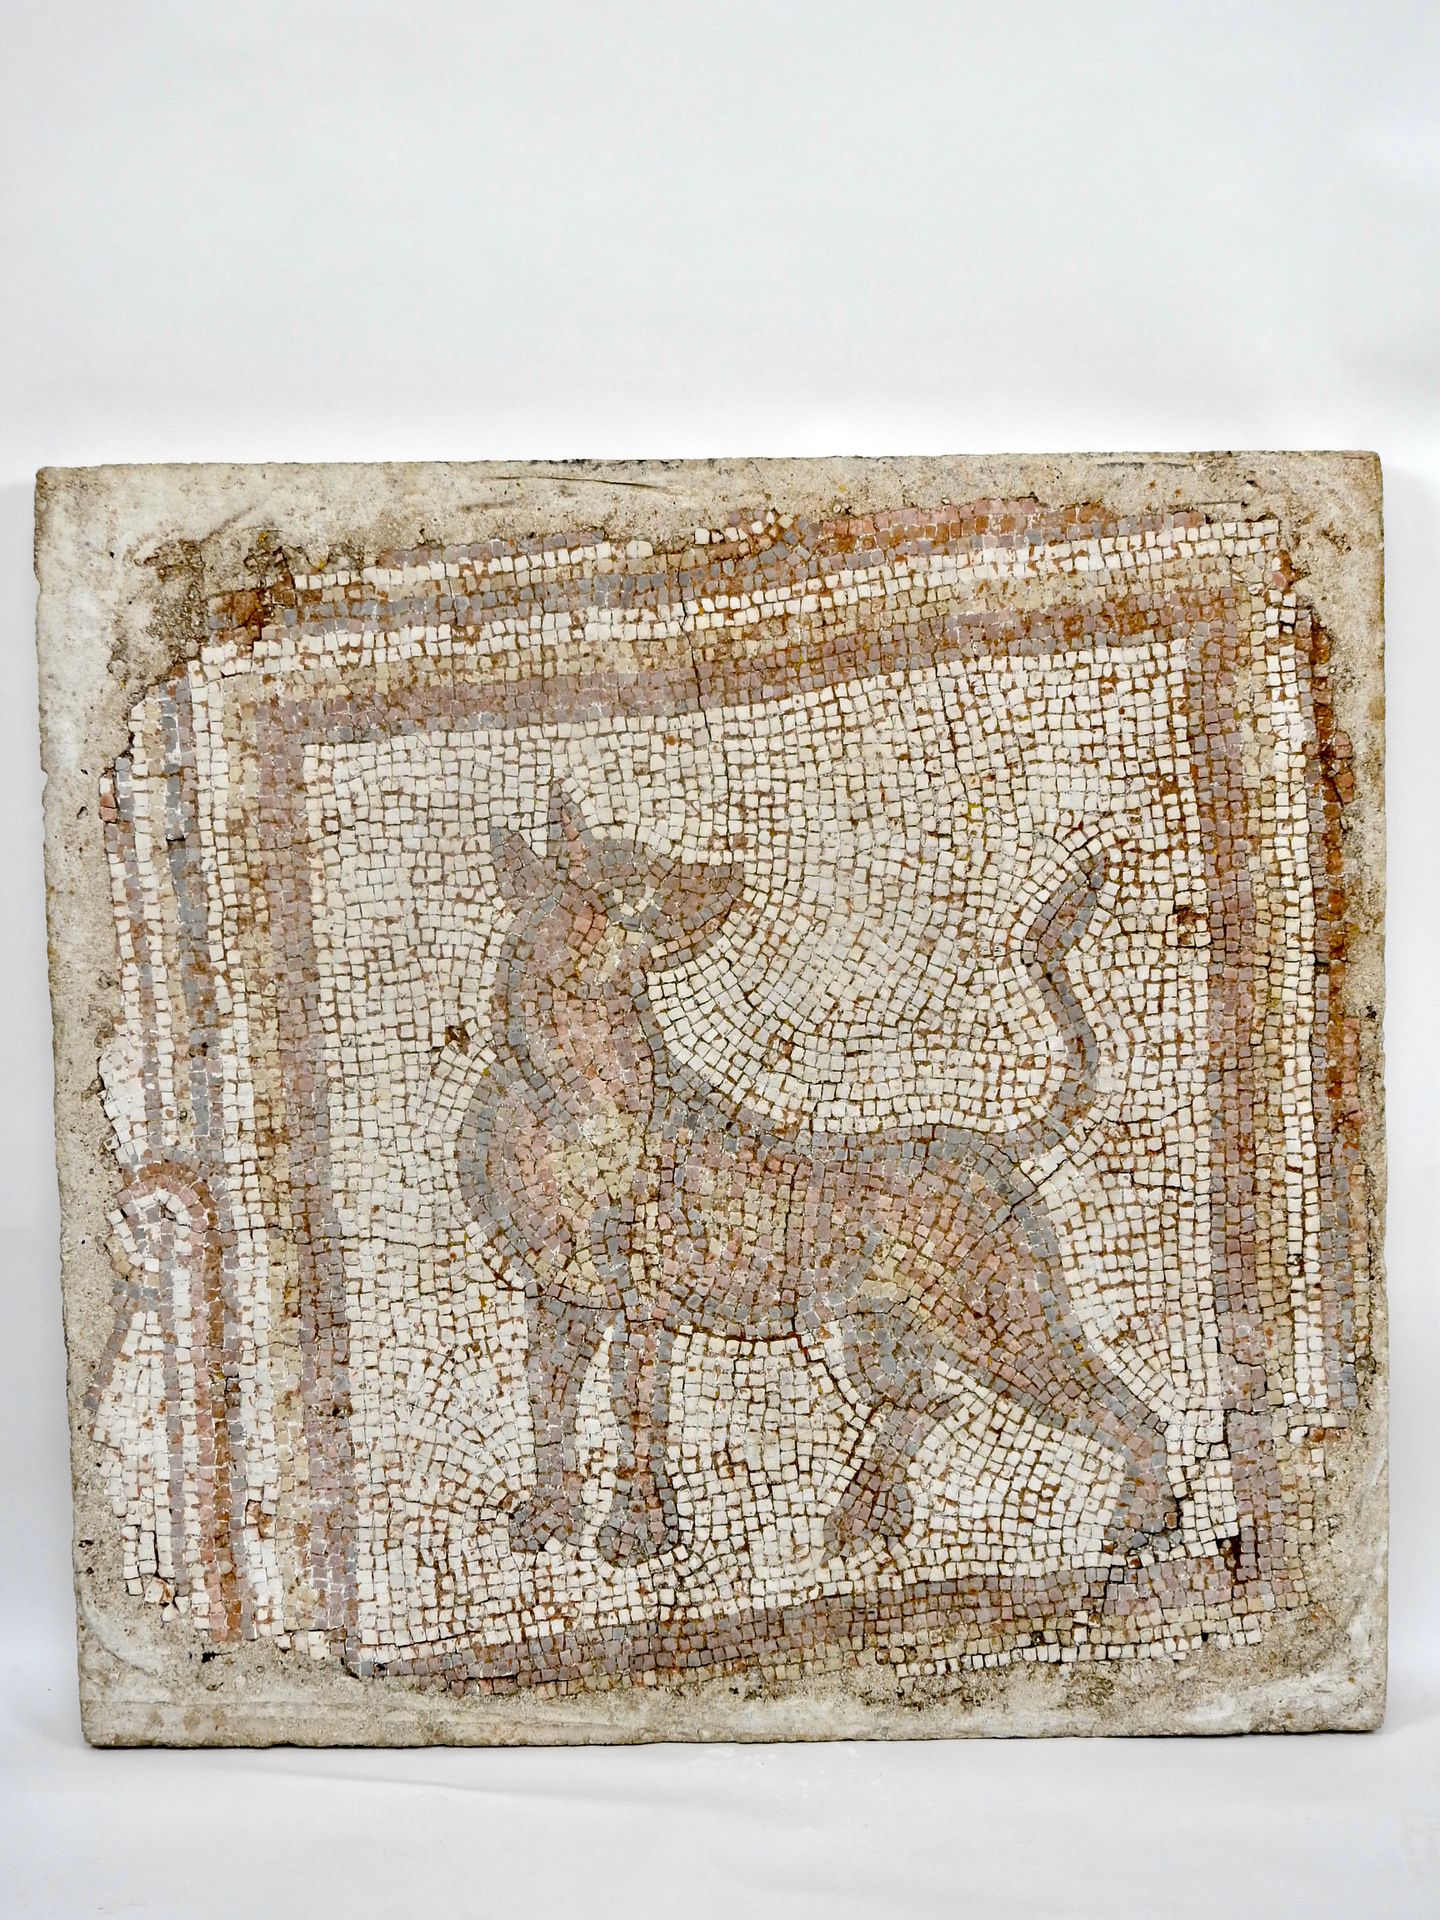 Null 罗马时期，公元前几世纪 马赛克语

88.5 x 91.5厘米

方形，由多色魔方组成，代表一只狼。

在盘子上修复作品，以便巩固